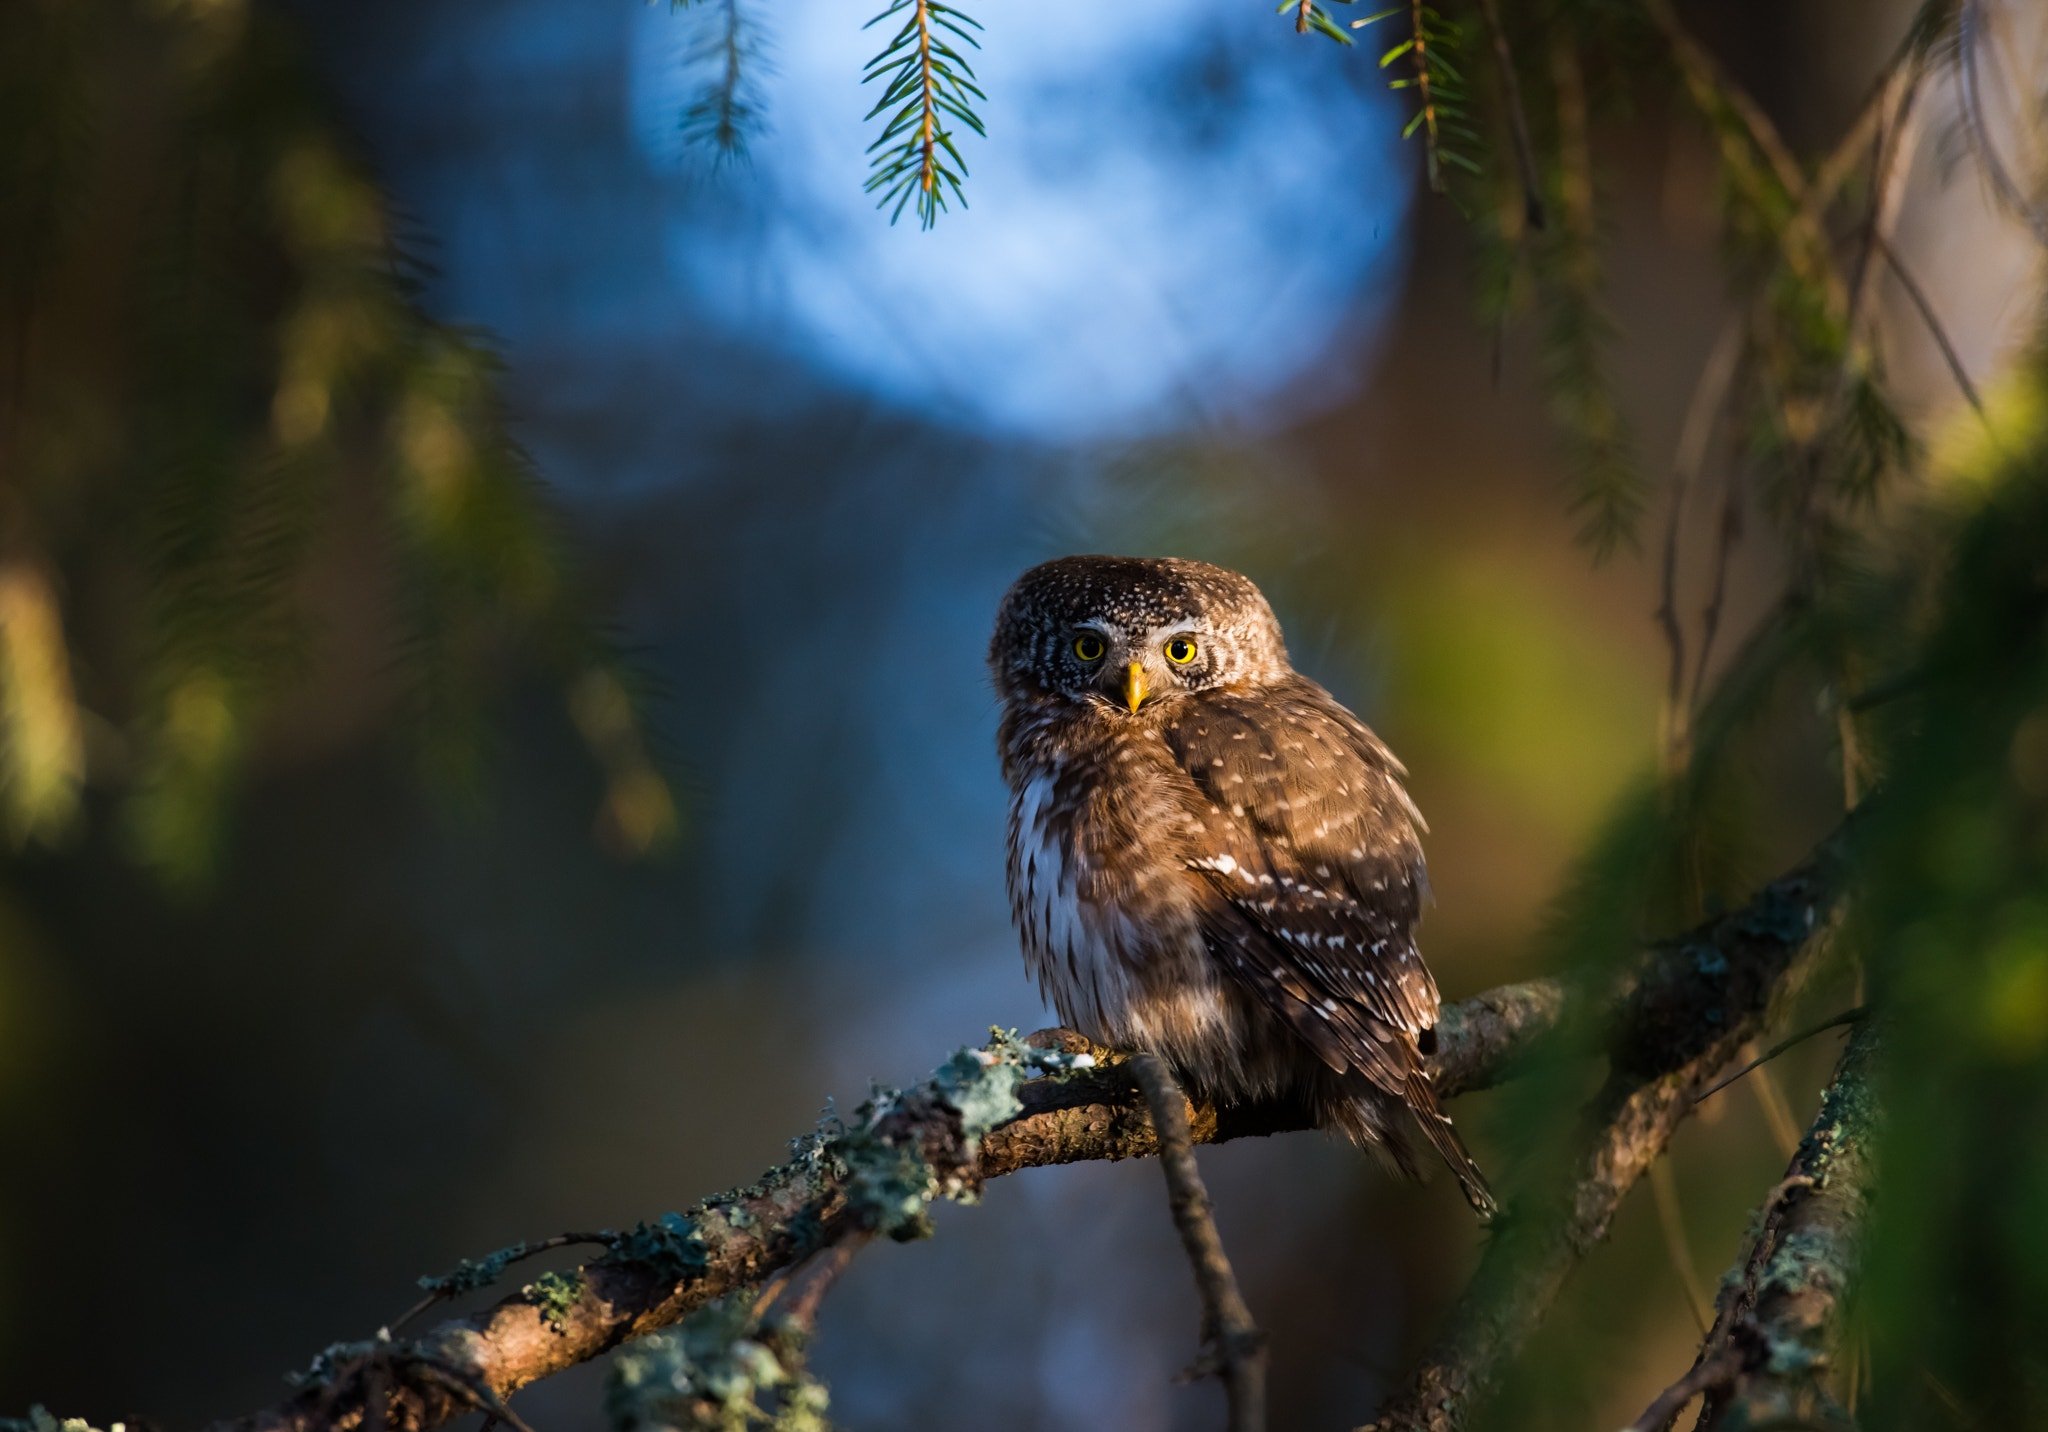 Pygmy owl, finland, sunrise, Jarkko Järvinen